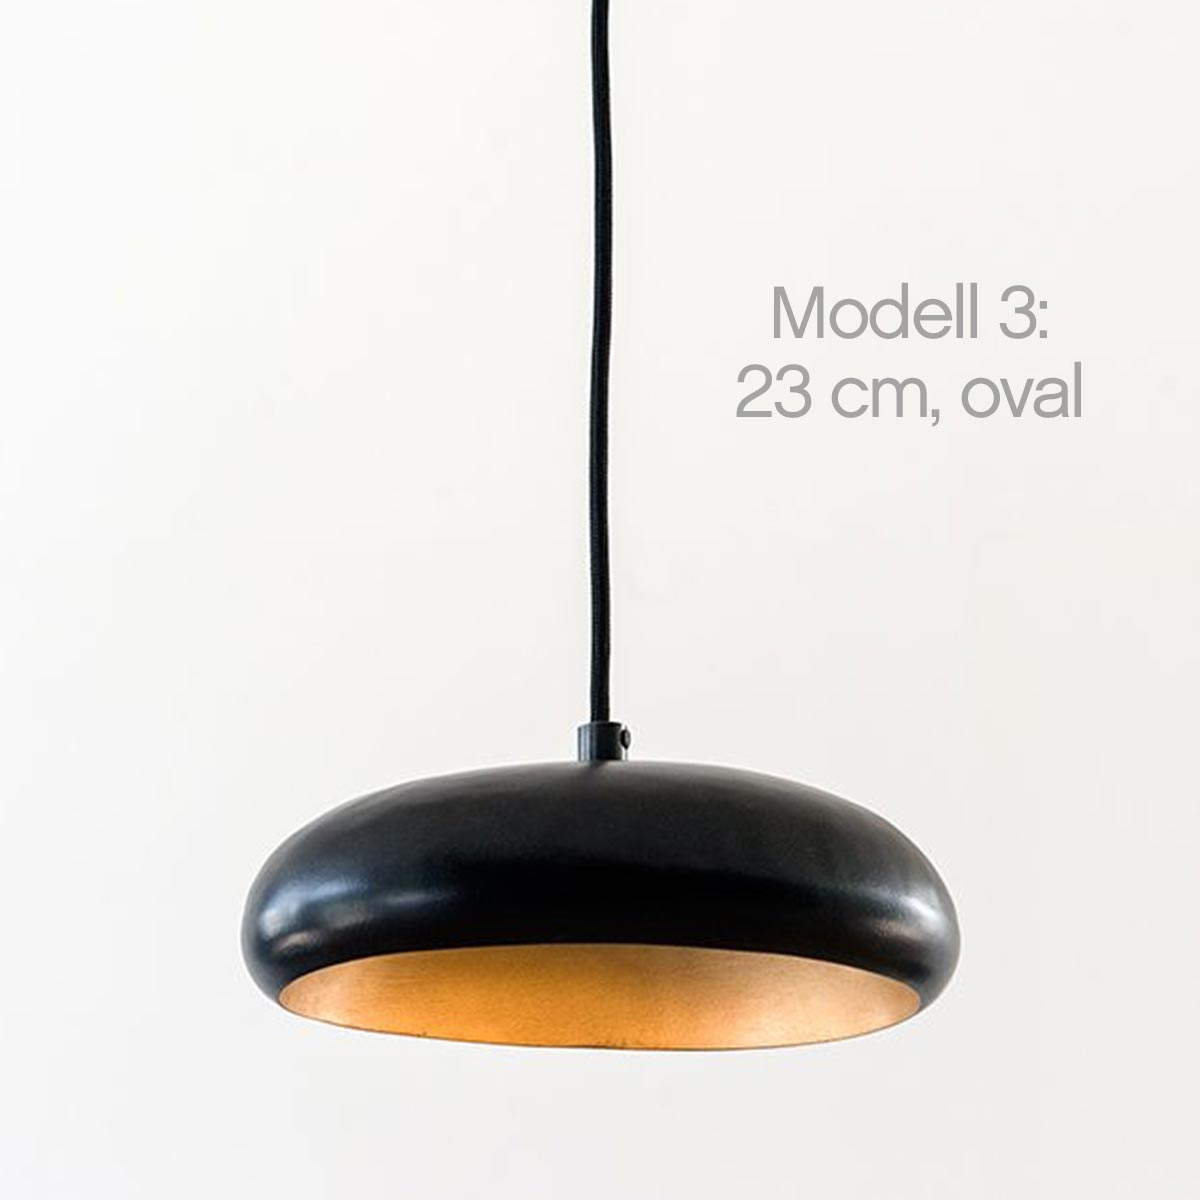 Unregelmäßig abgerundete LED-Hängeleuchte GALET NOIR / drei Größen: Das ovale Modell 3 (Länge 23 cm)